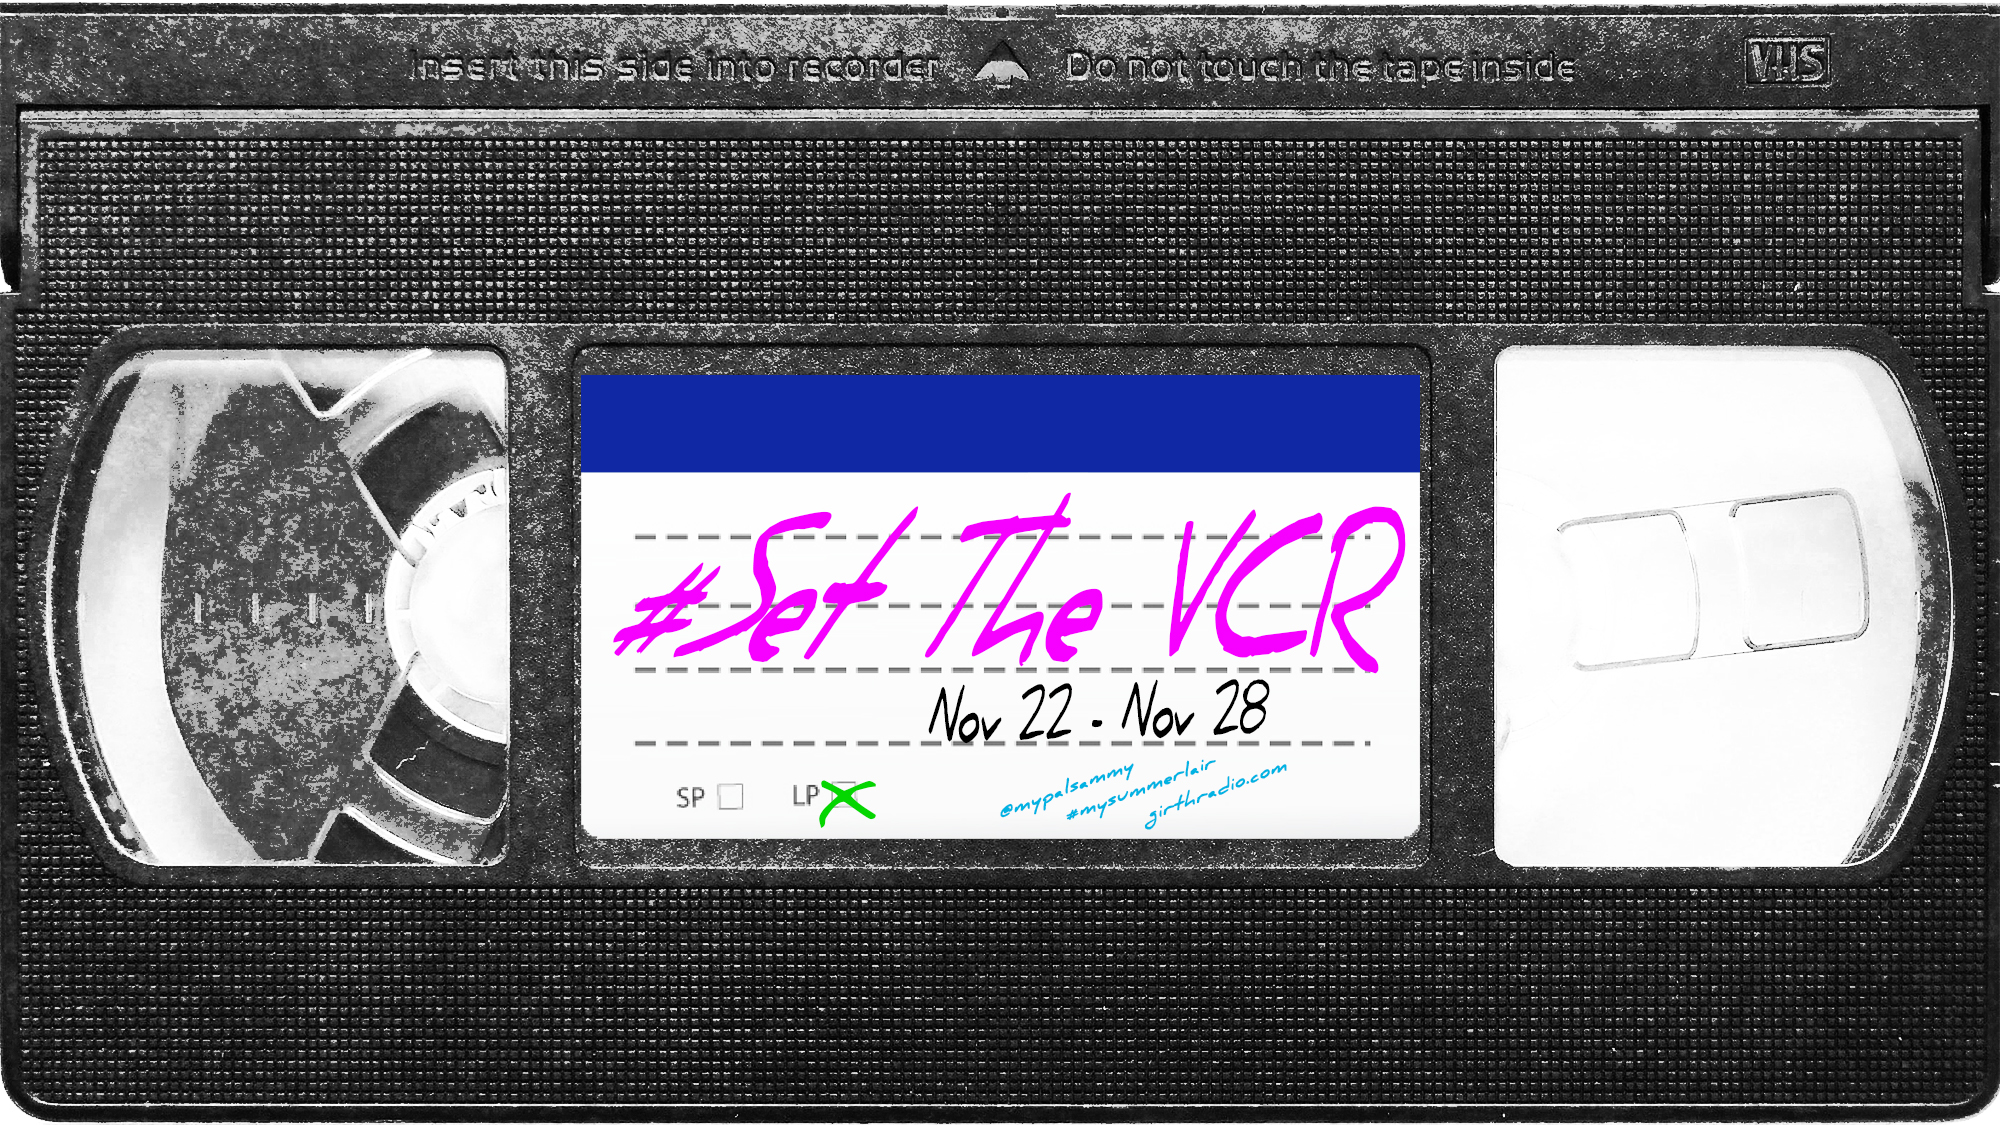 #SetTheVCR: November 22-28, 2020